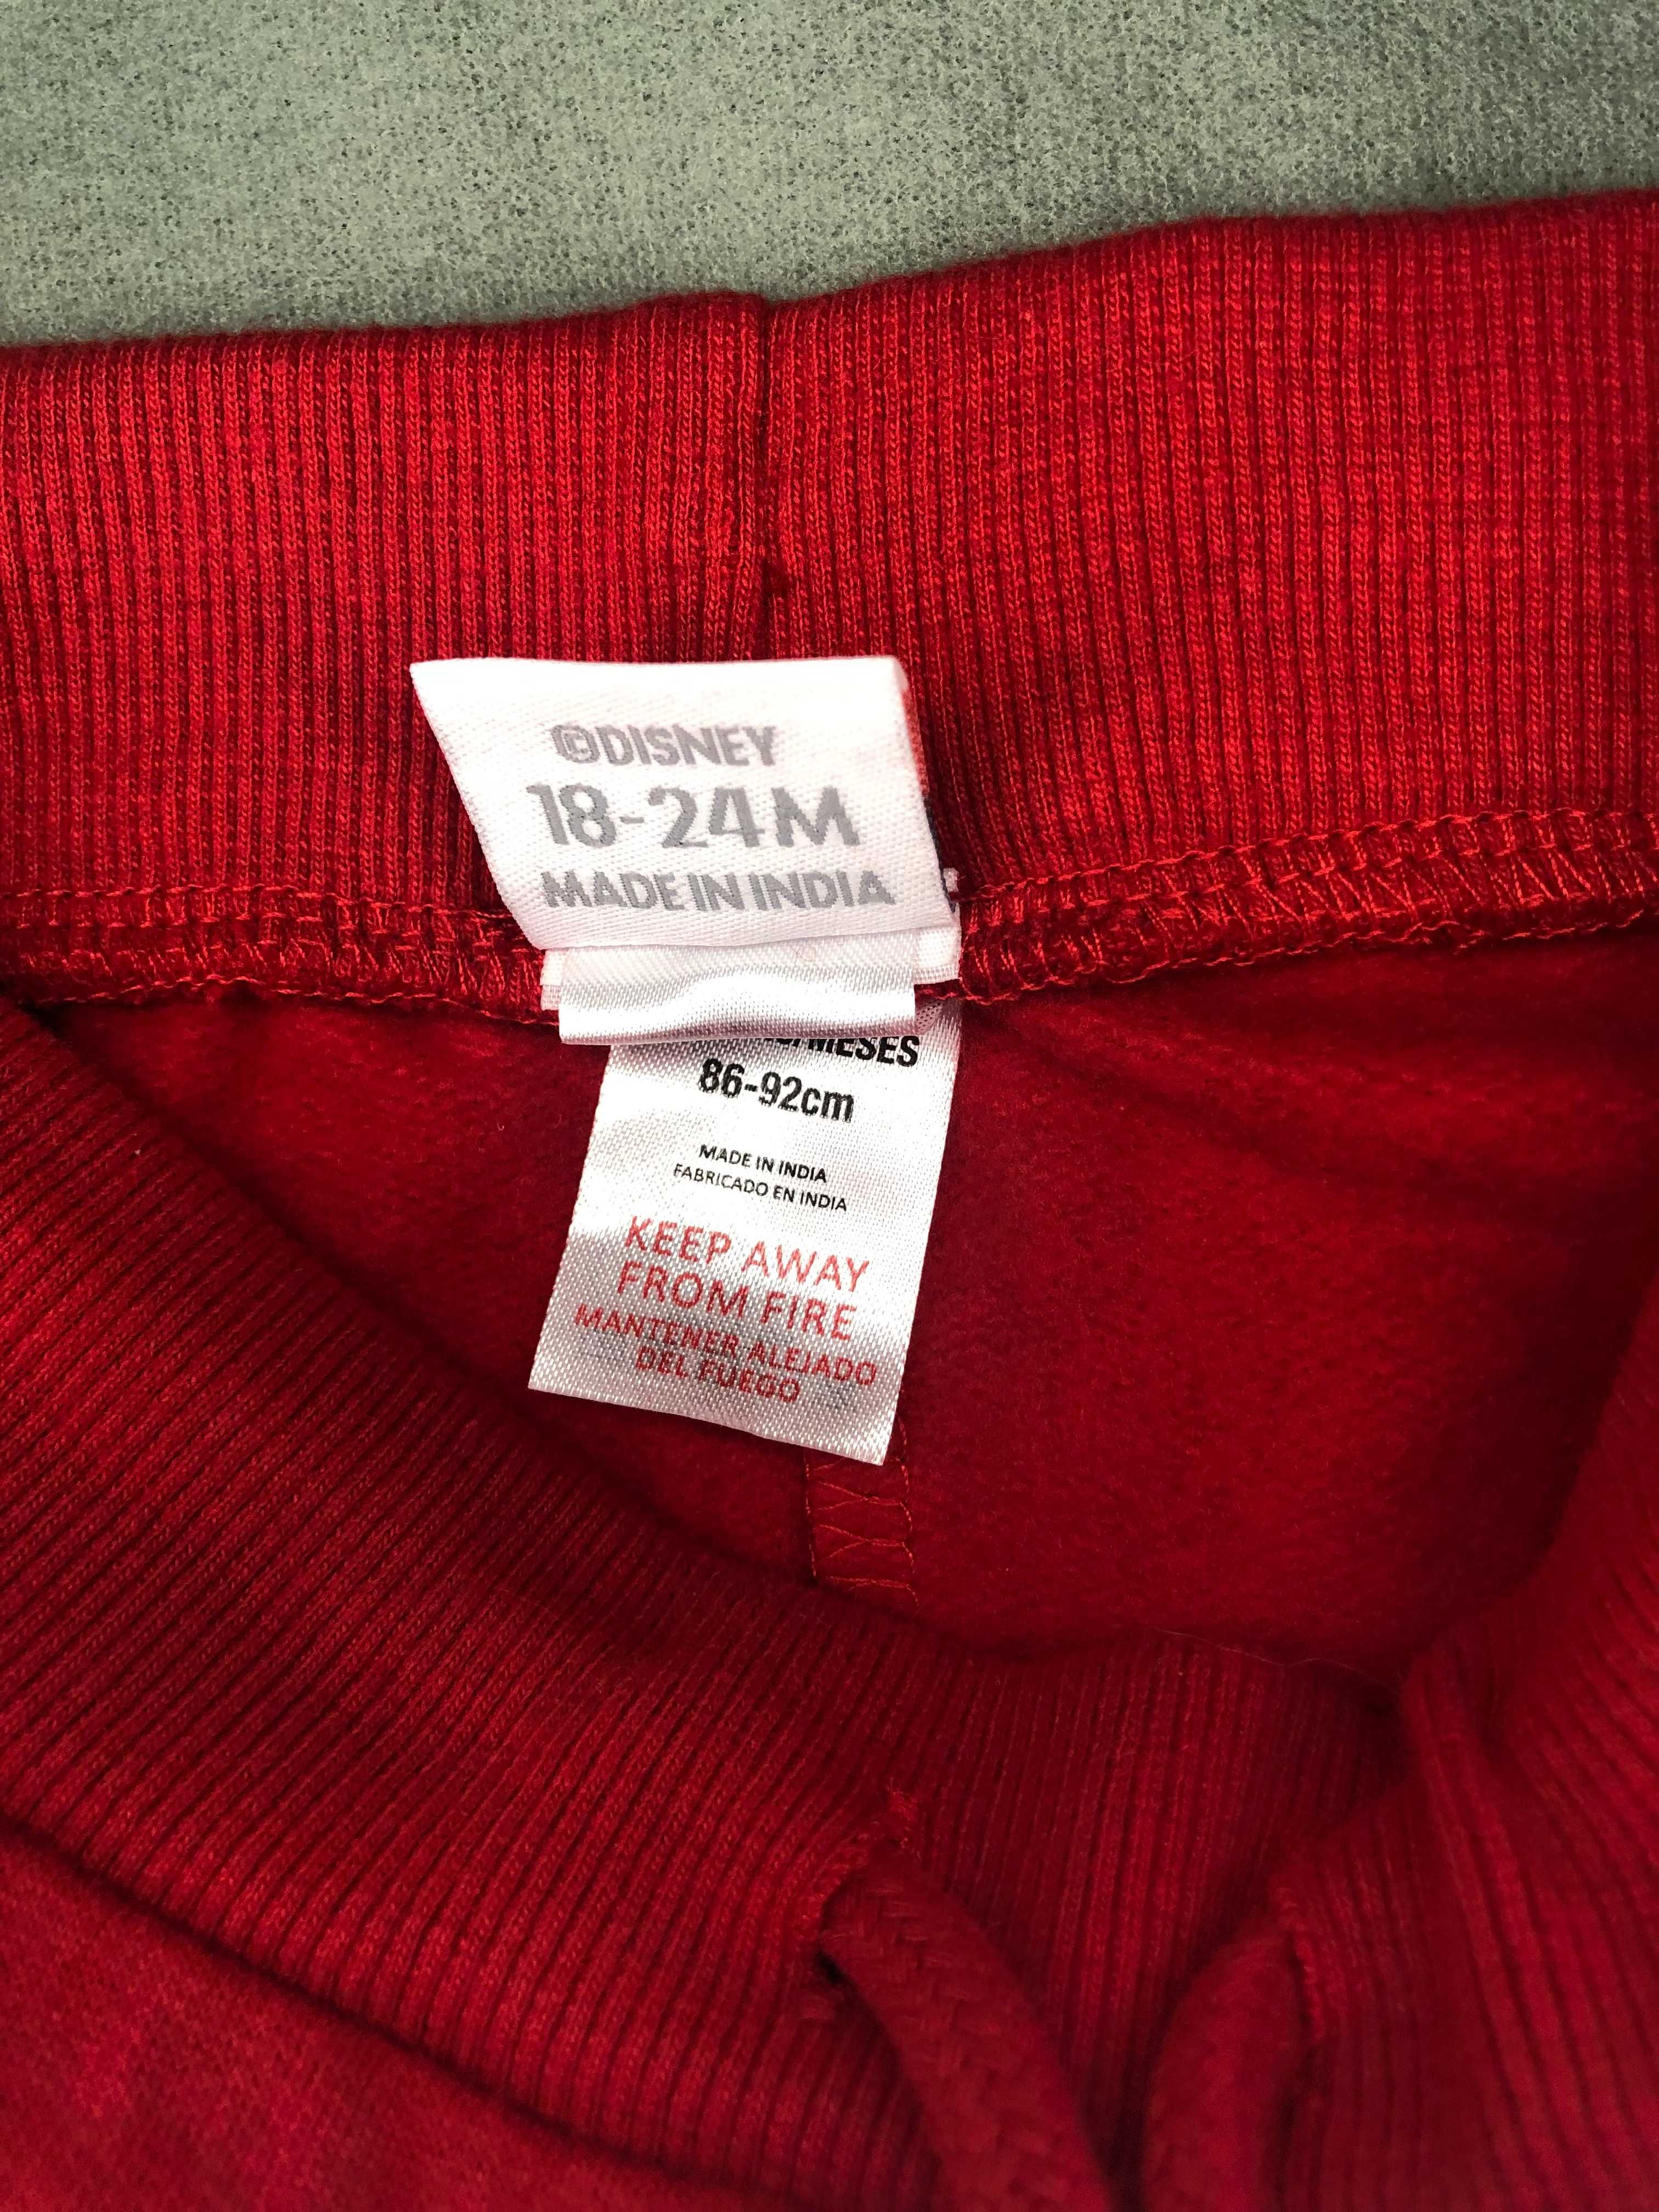 Стильні червоні спортивні штанці з вишитим Вінні Пухом, 18-24М, акція